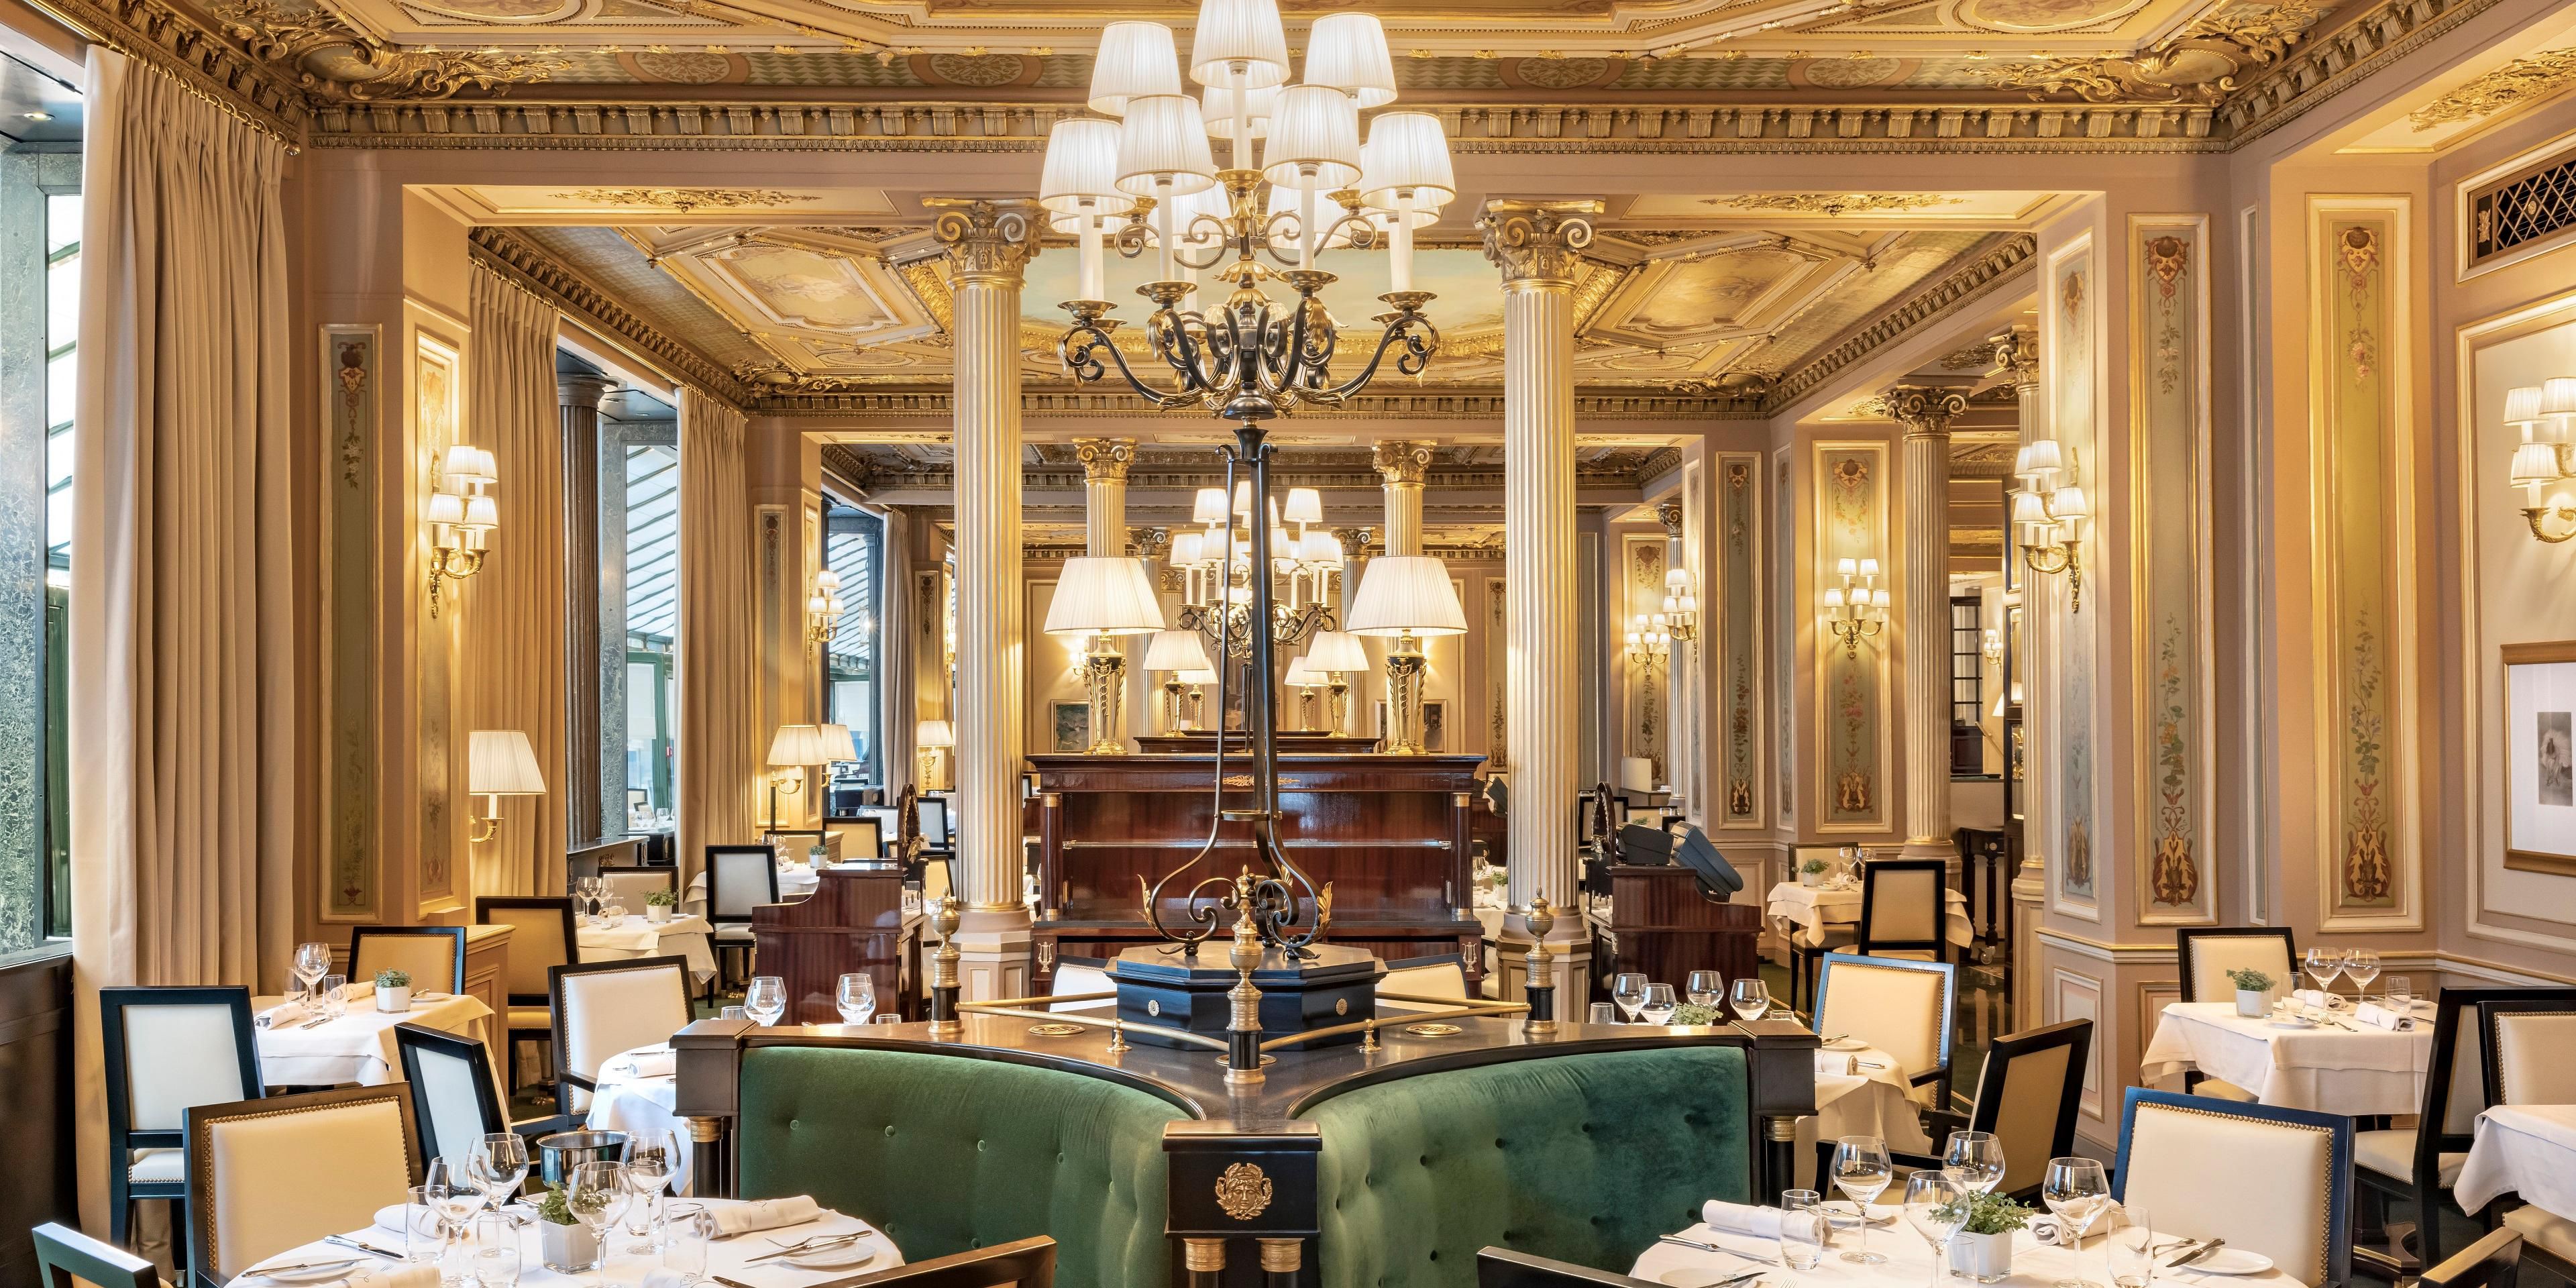 Découvrez le cadre historique du Café de la Paix, 
légende parisienne depuis 1862.
Le Chef Laurent André y propose les classiques de la gastronomie française pour des moments d'exception face à l’Opéra Garnier.